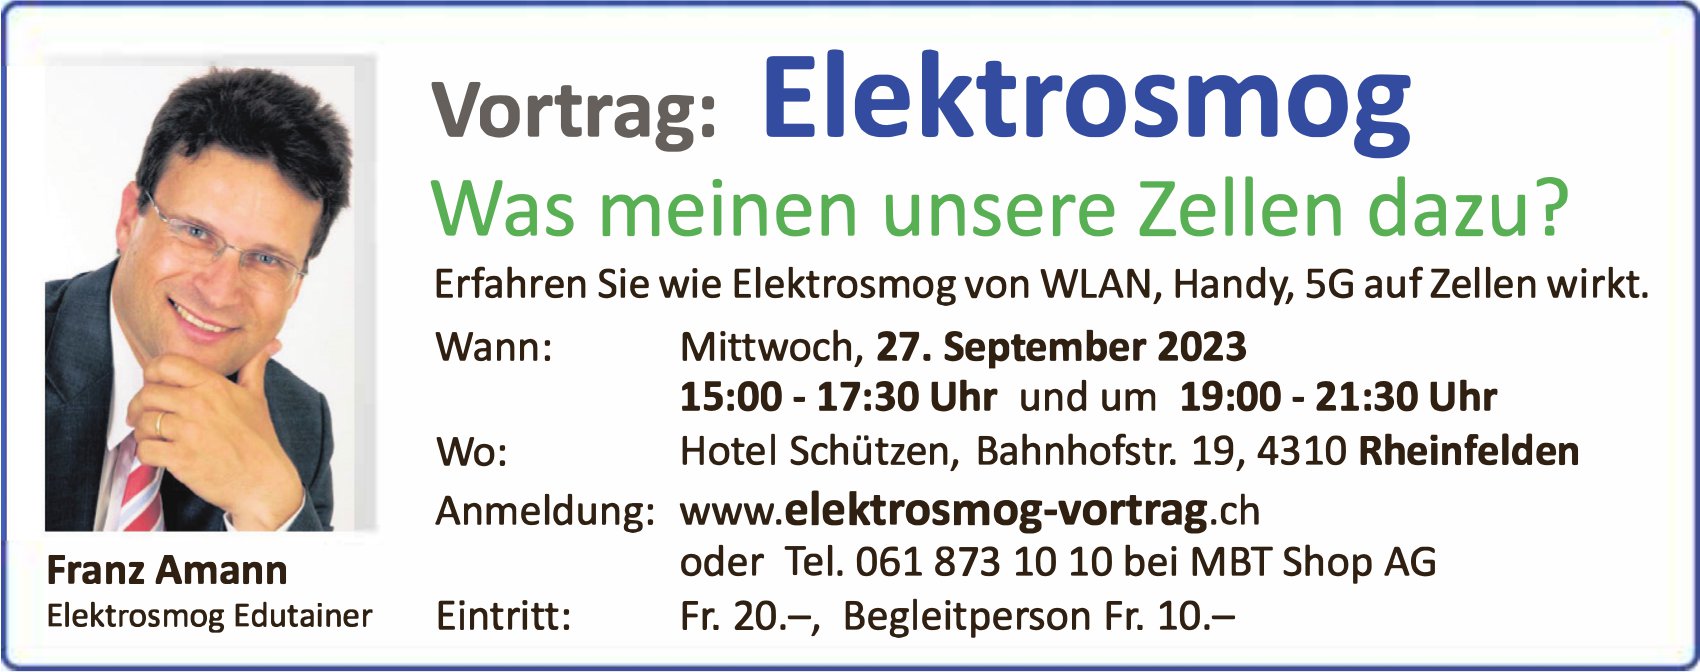 Elektrosmog - Was meinen unsere Zellen dazu?, 27. September, Hotel Schützen, Rheinfelden